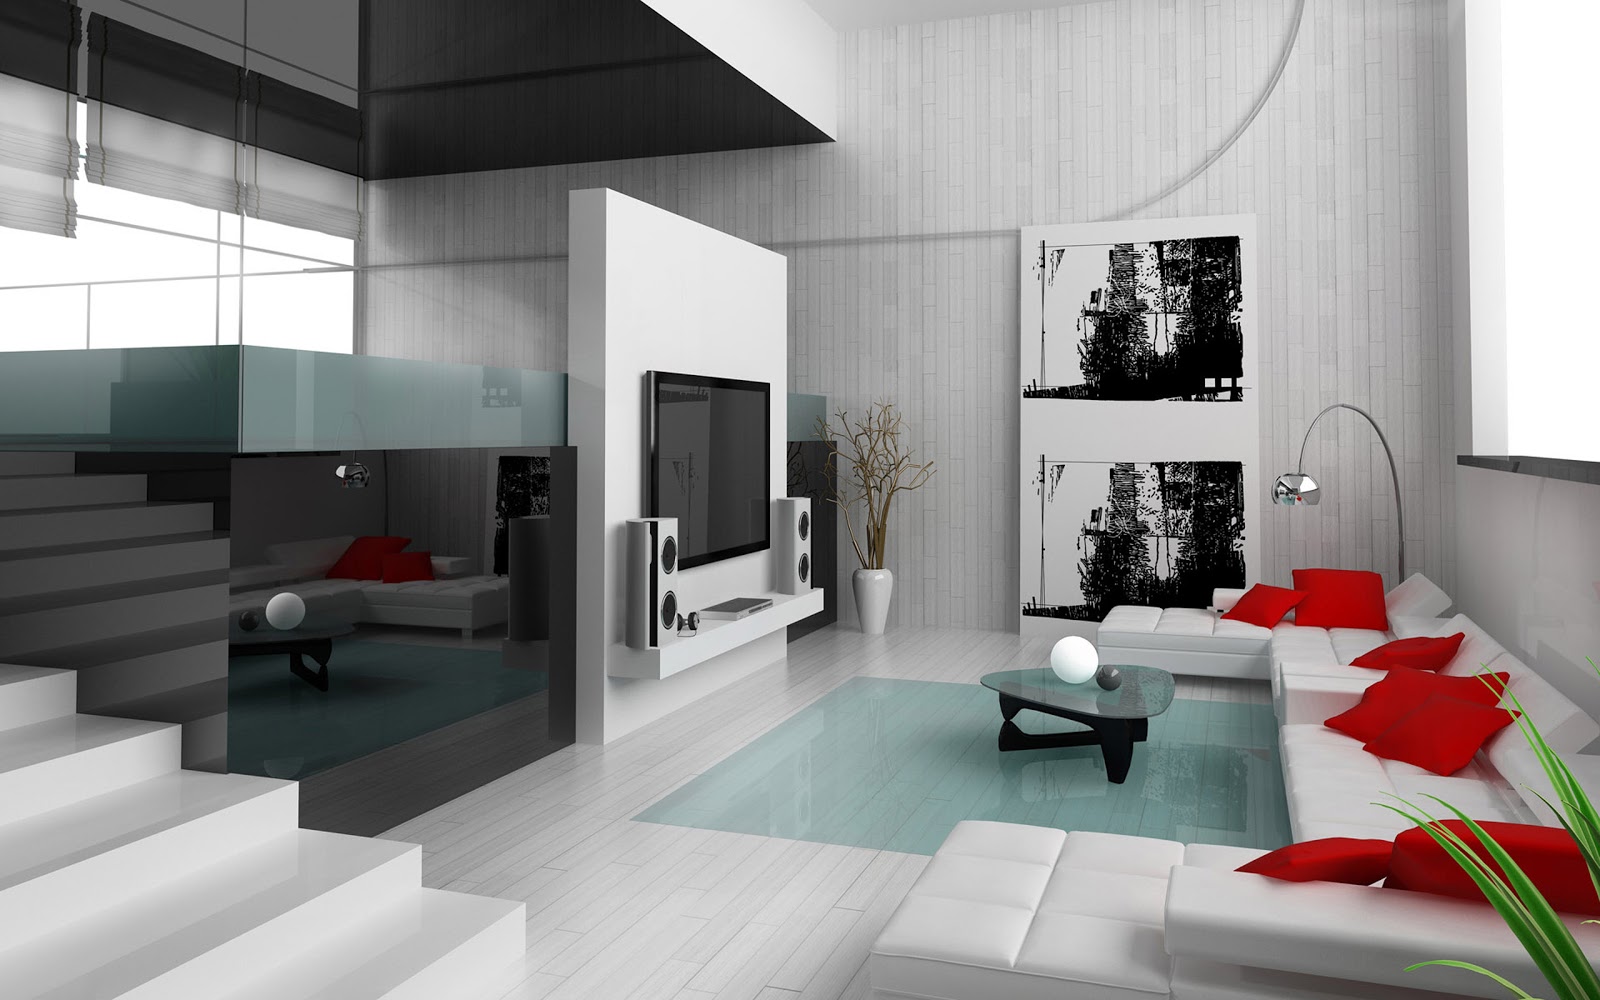  Desain Interior Ruang Keluarga  Modern Terbaru 2019